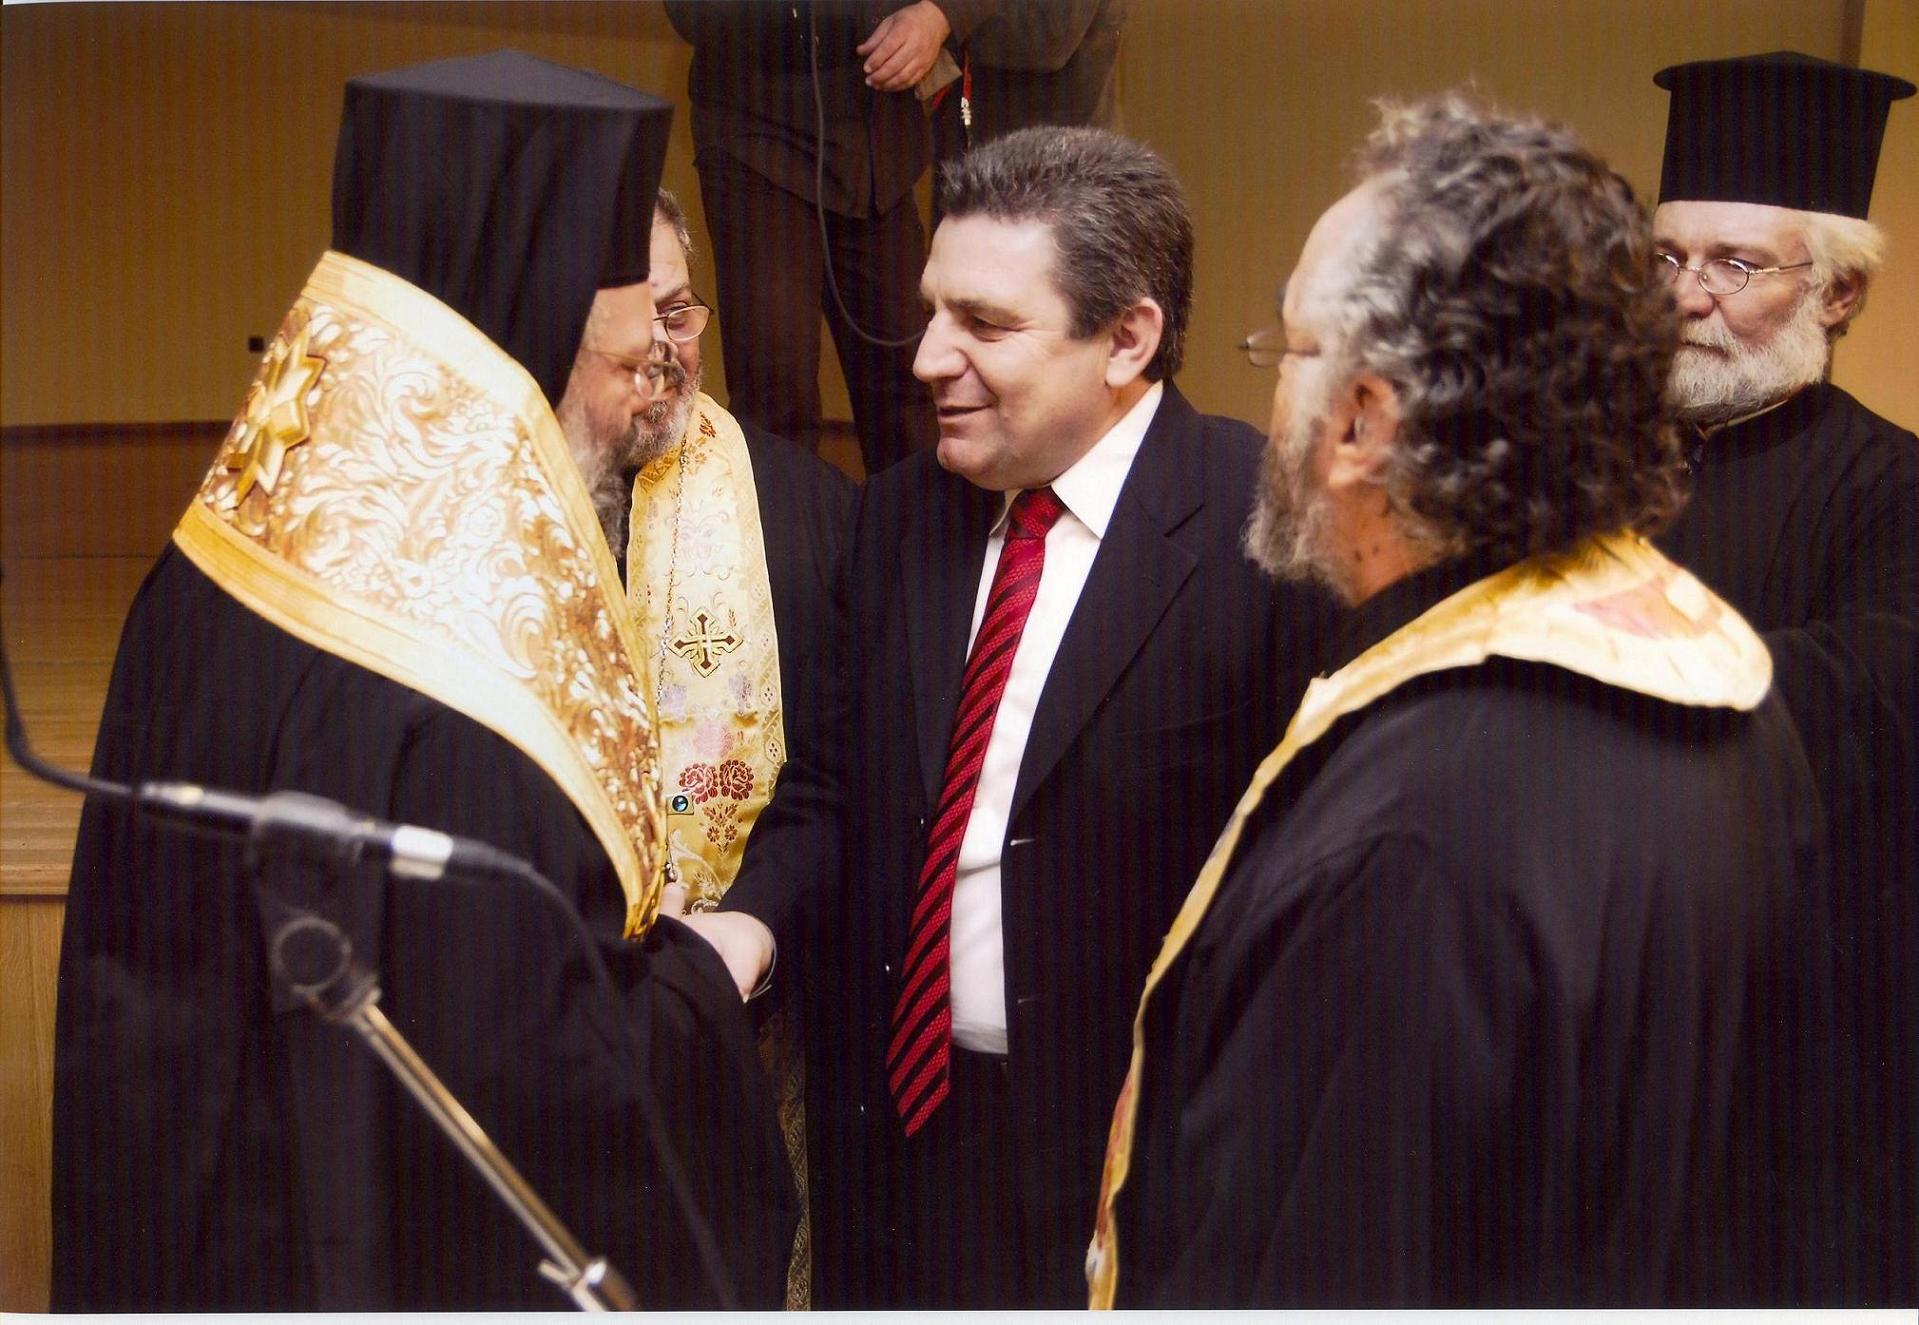 Ο Δήμαρχος Ιλίου με τον Μητροπολίτη κ.Δαμασκηνό και ιερείς από τις ενορίες του Δήμου Ιλίου κατά την ορκωμοσία του Ο Δήμαρχος Ιλίου με τον Μητροπολίτη κ. Δαμασκηνό και ιερείς από τις ενορίες του Δήμου Ιλίου κατά την ορκωμοσία του